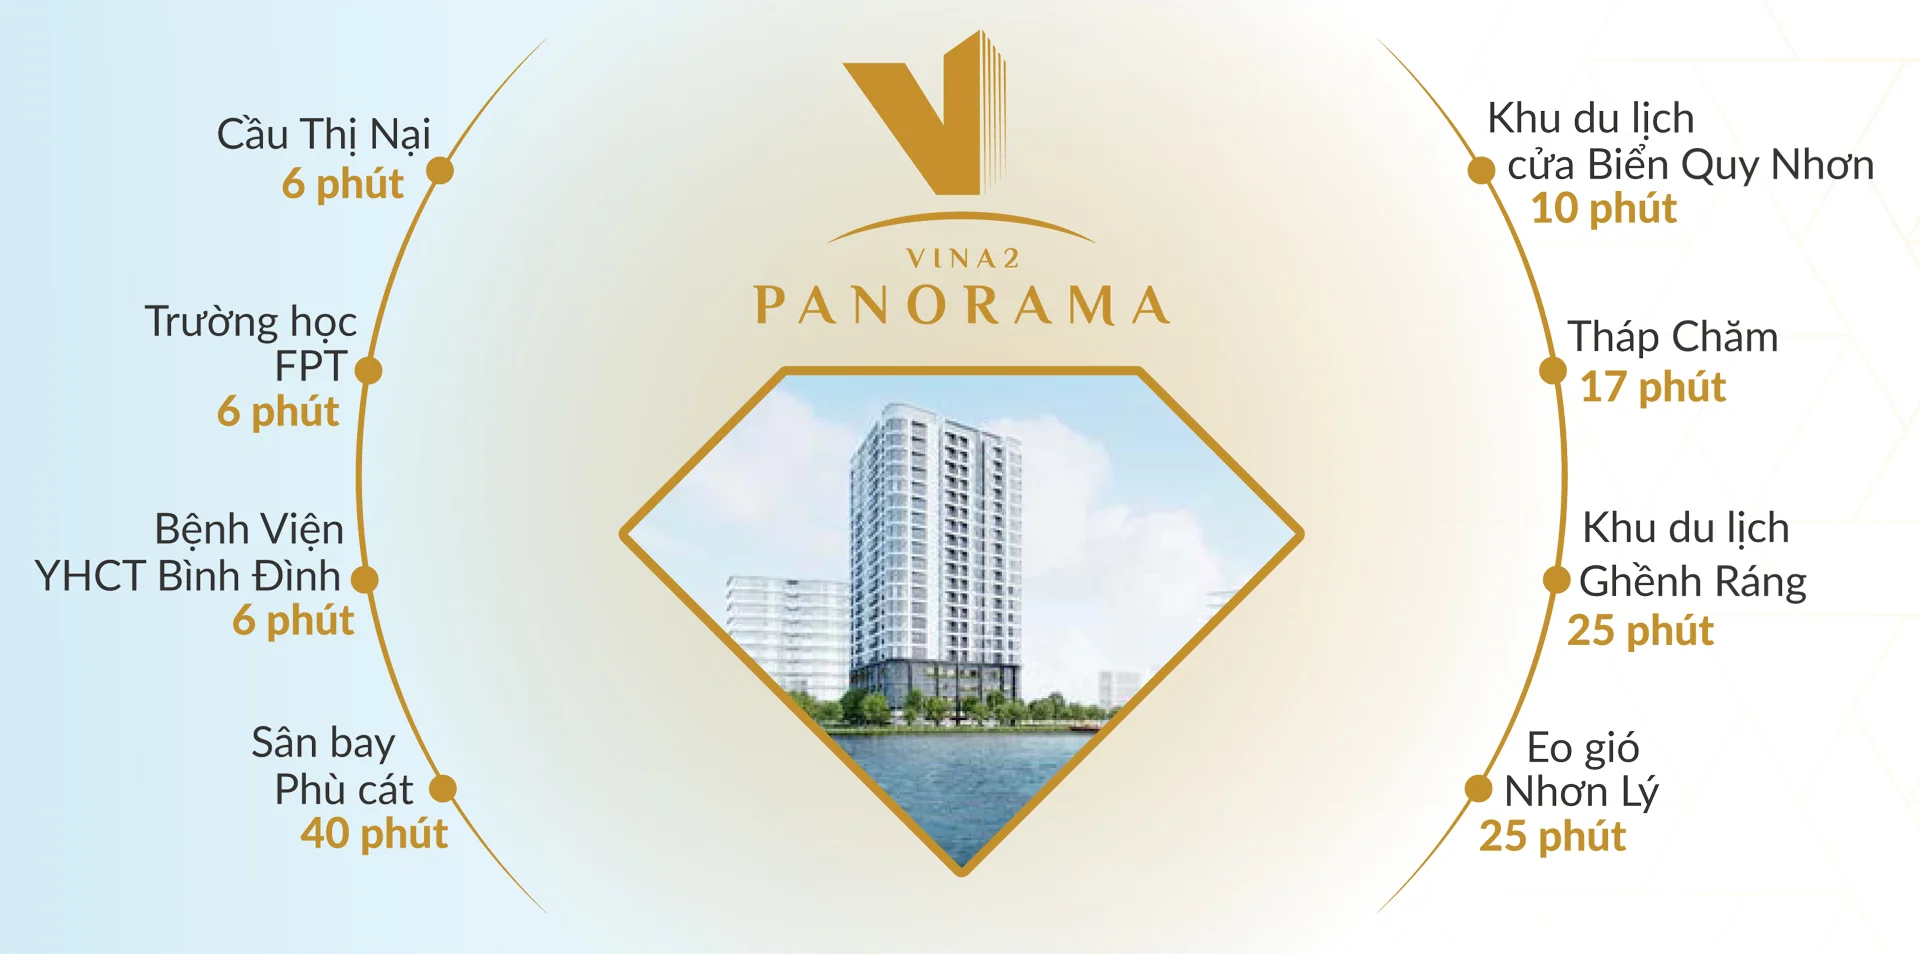 Tiện ích ngoại khu nổi bật của Vina2 Panorama